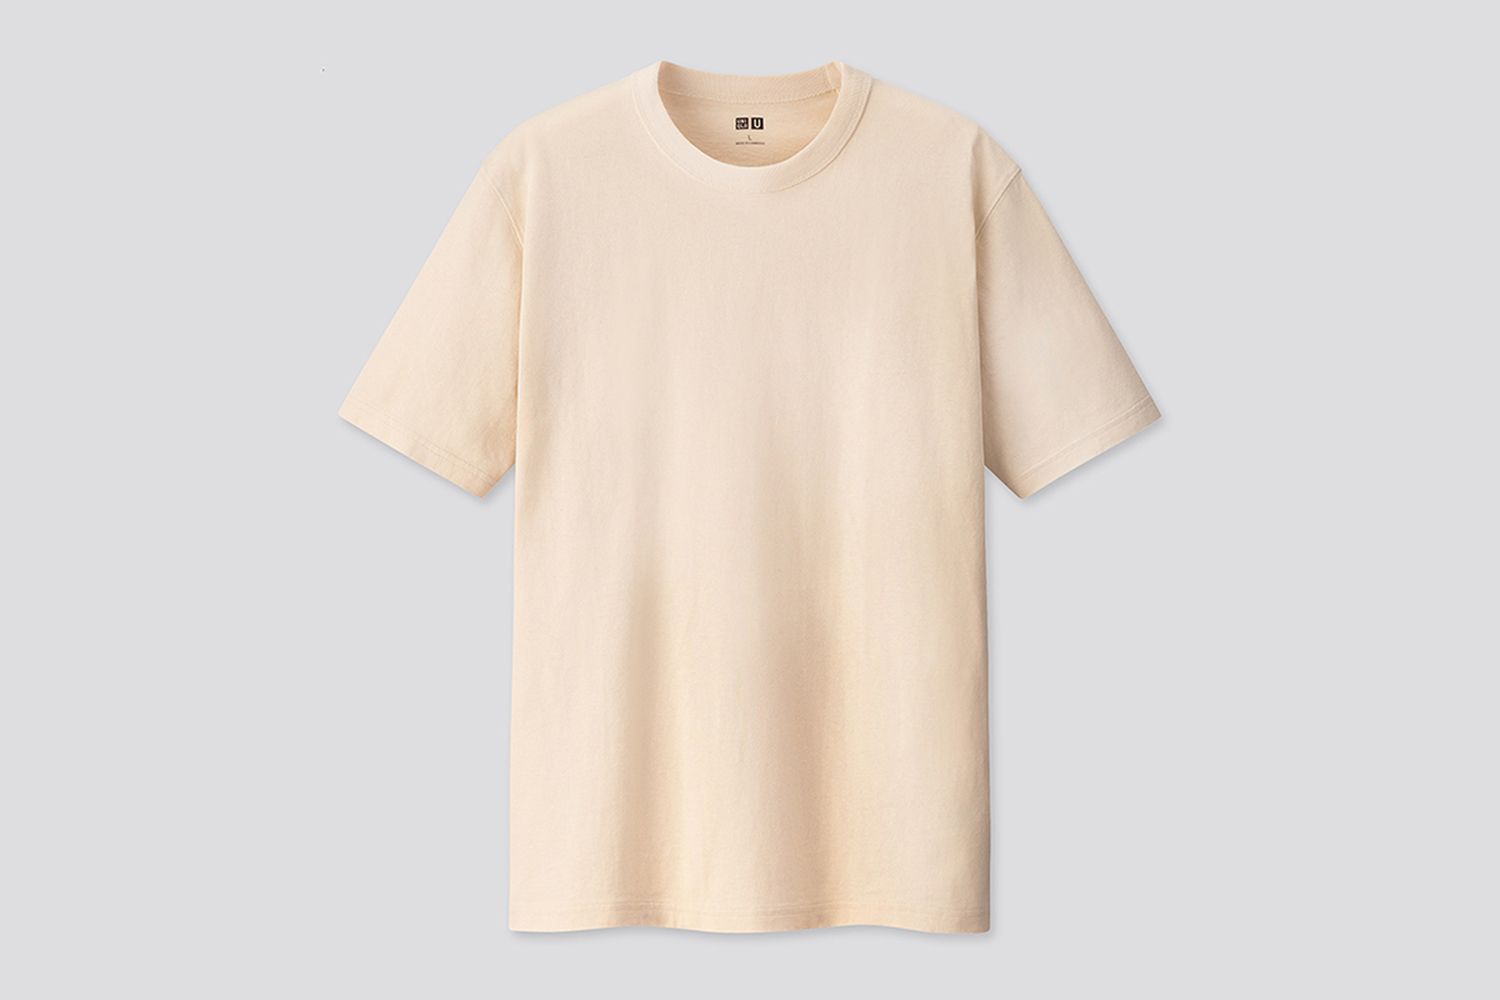 Afdæk fe En del The Best Neutral & Off-White T-Shirts to Shop Now